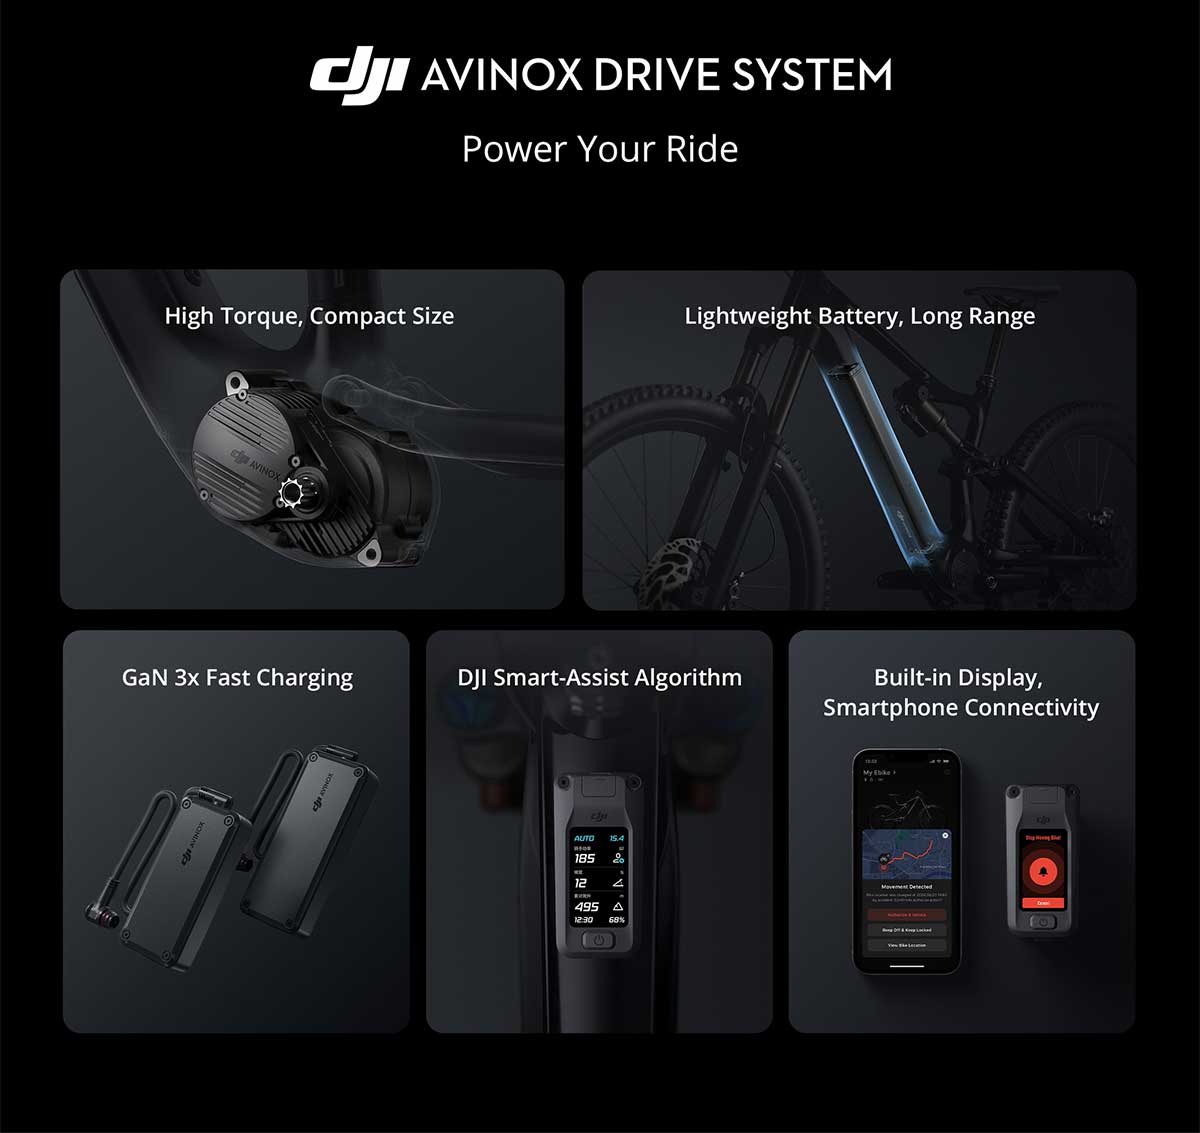 DJI irrumpe en el segmento de las bicicletas eléctricas con la Amflow PL, una e-MTB de carbono con motor propio y peso contenido